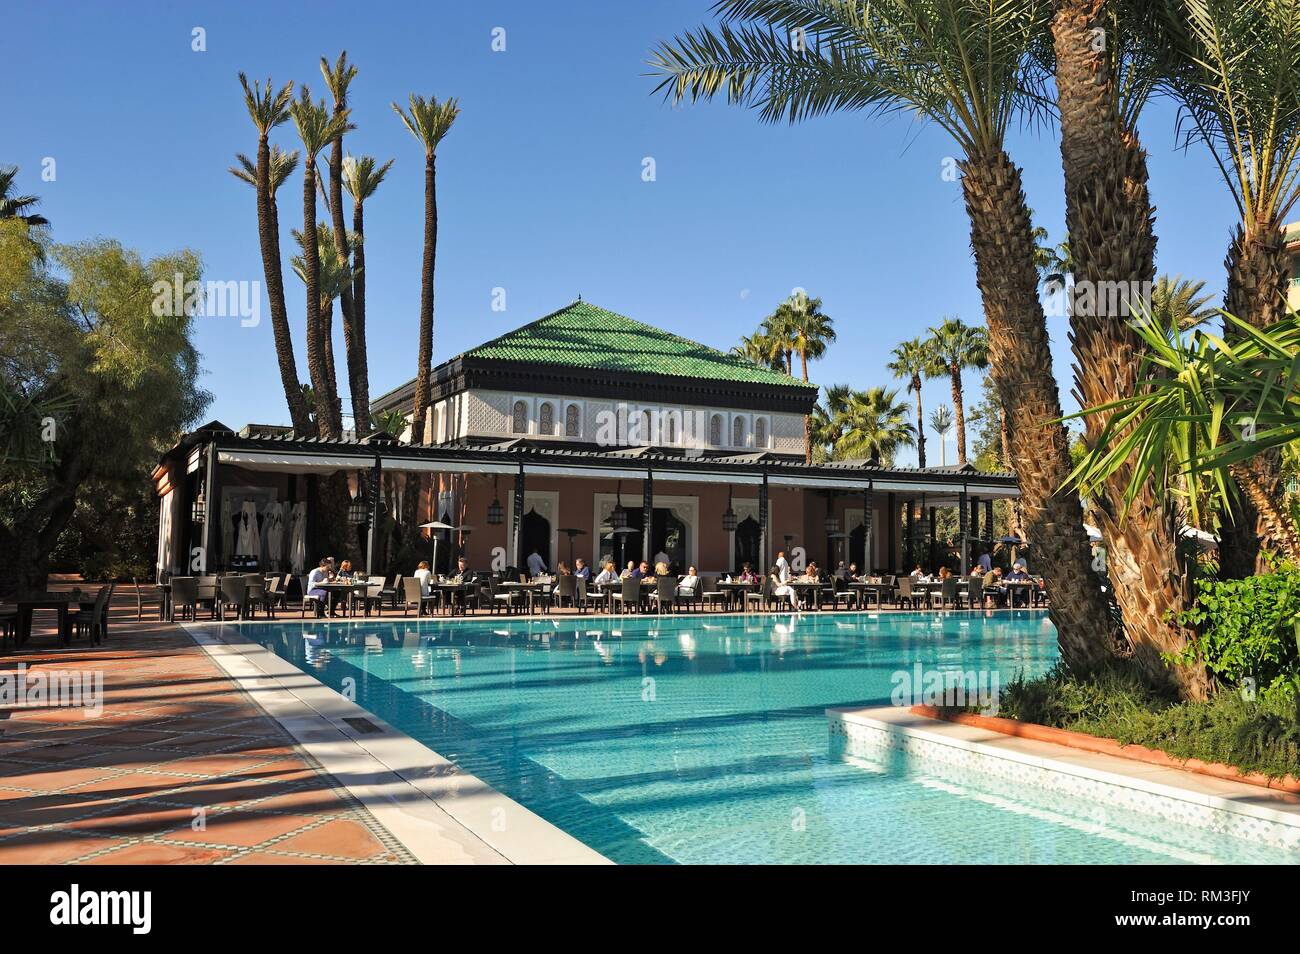 La piscina del hotel de lujo de 5 estrellas Hotel La Mamounia, Marrakech, Marruecos, el Norte de África. Foto de stock